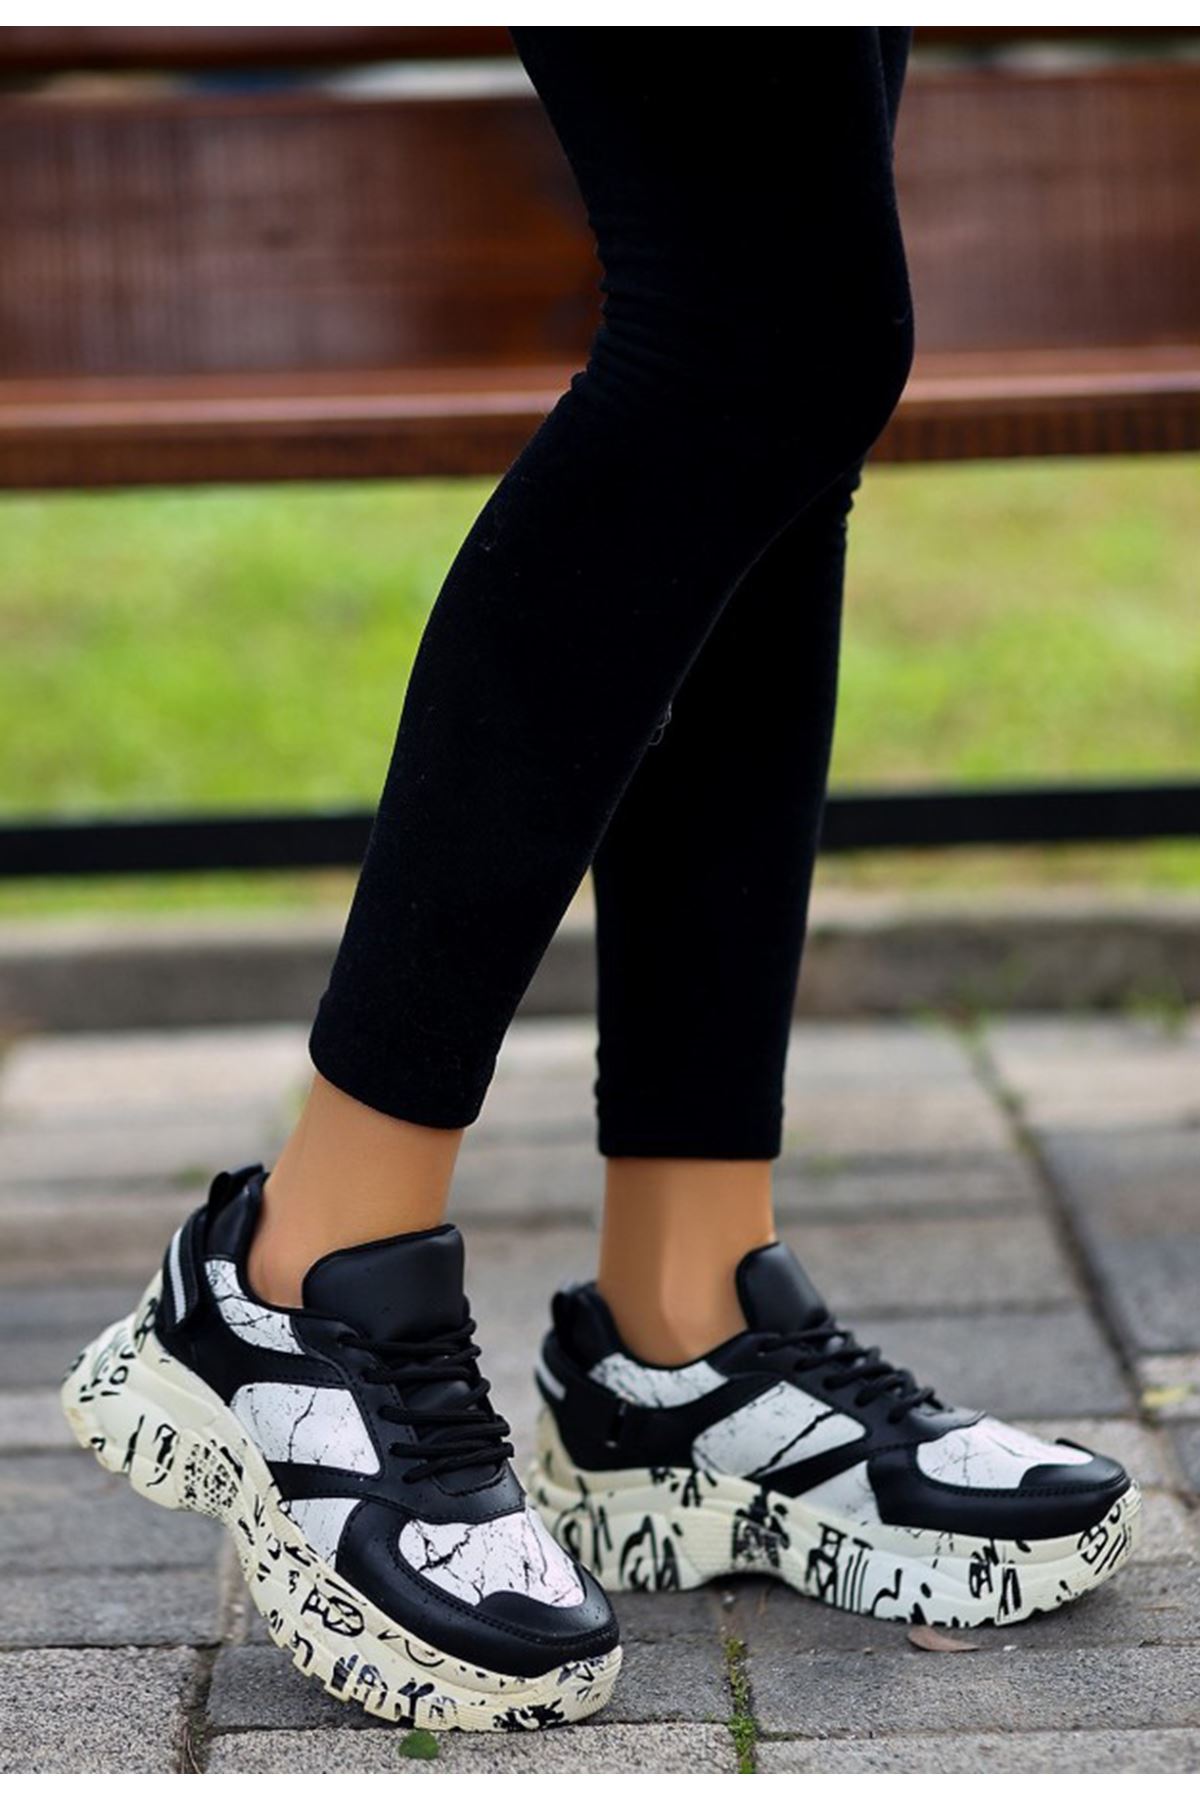 ERBFUNİE Siyah Beyaz Deri Bayan Detaylı Bağcıklı Spor Ayakkabı